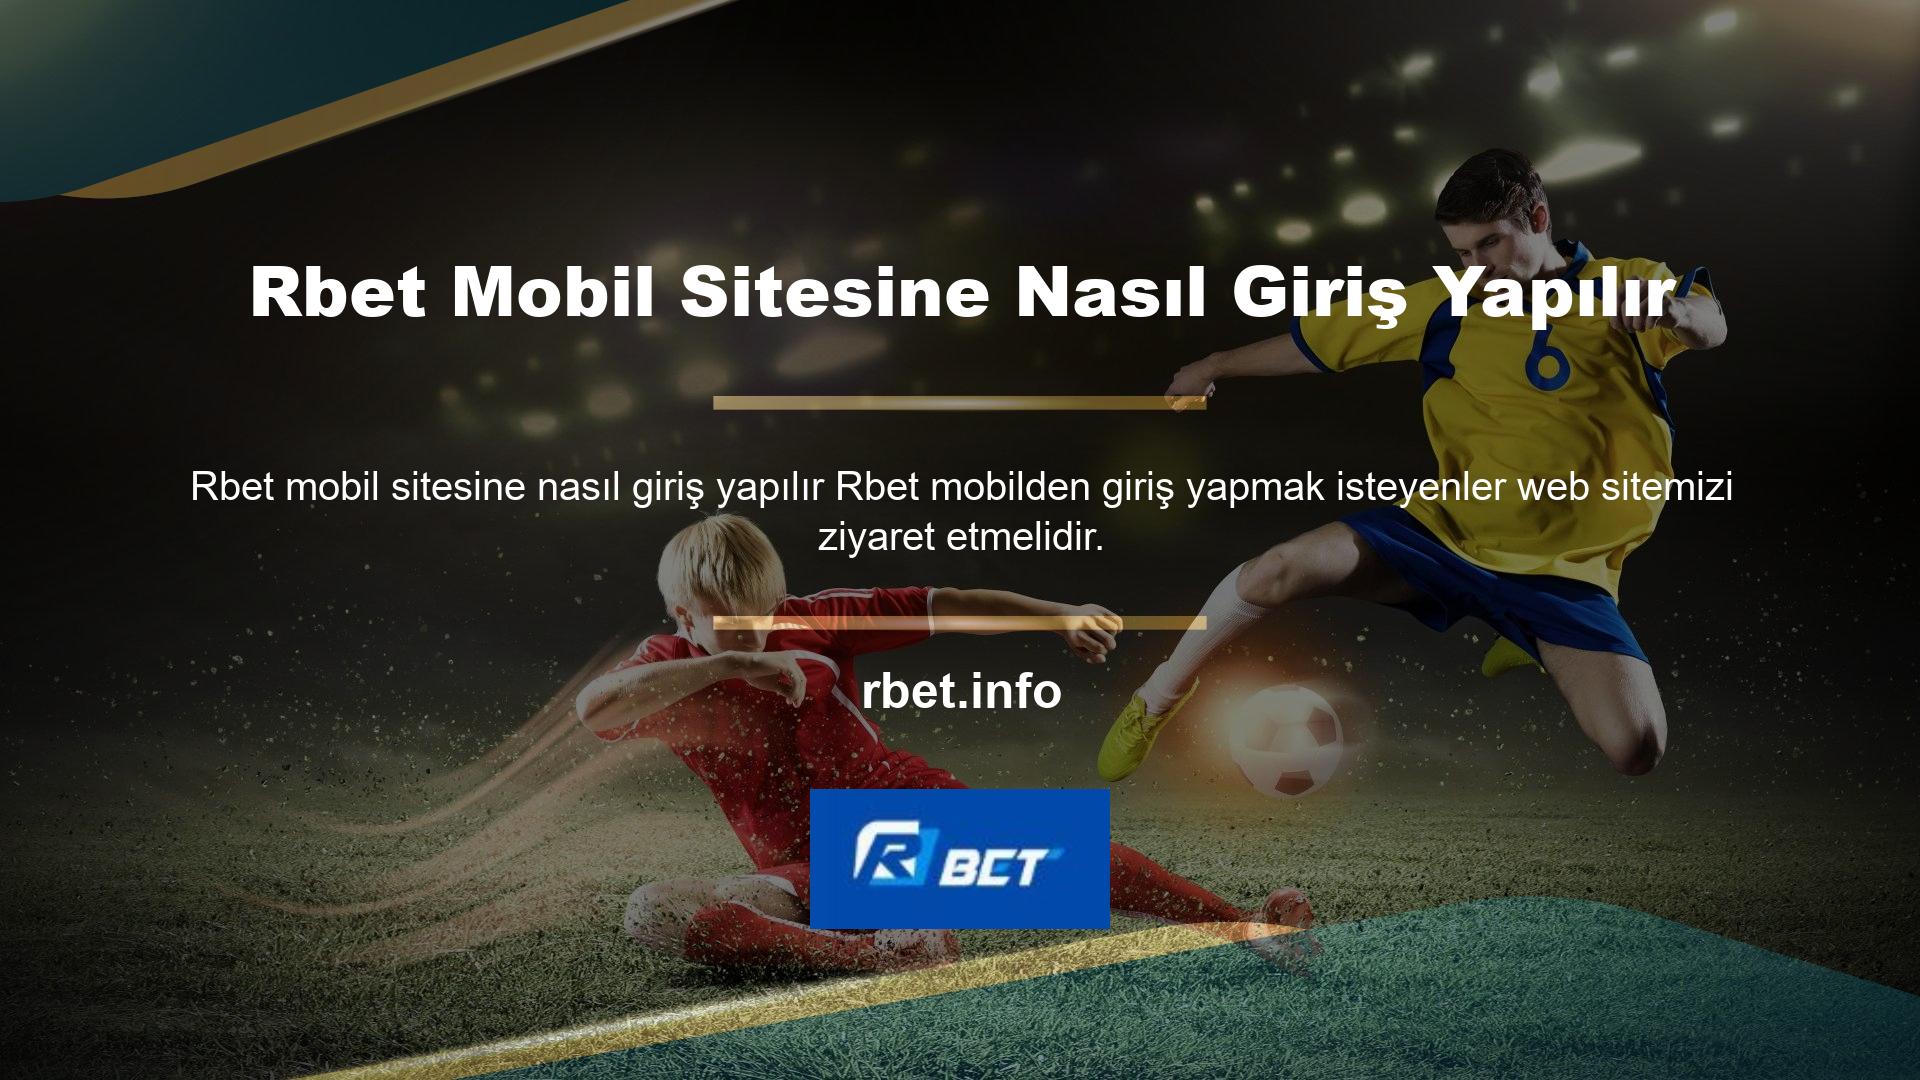 Rbet, Türkiye'de çevrimiçi casino sunan ilk sitelerden biriydi ve tarihi boyunca birinci sınıf hizmet sunmaya devam etti